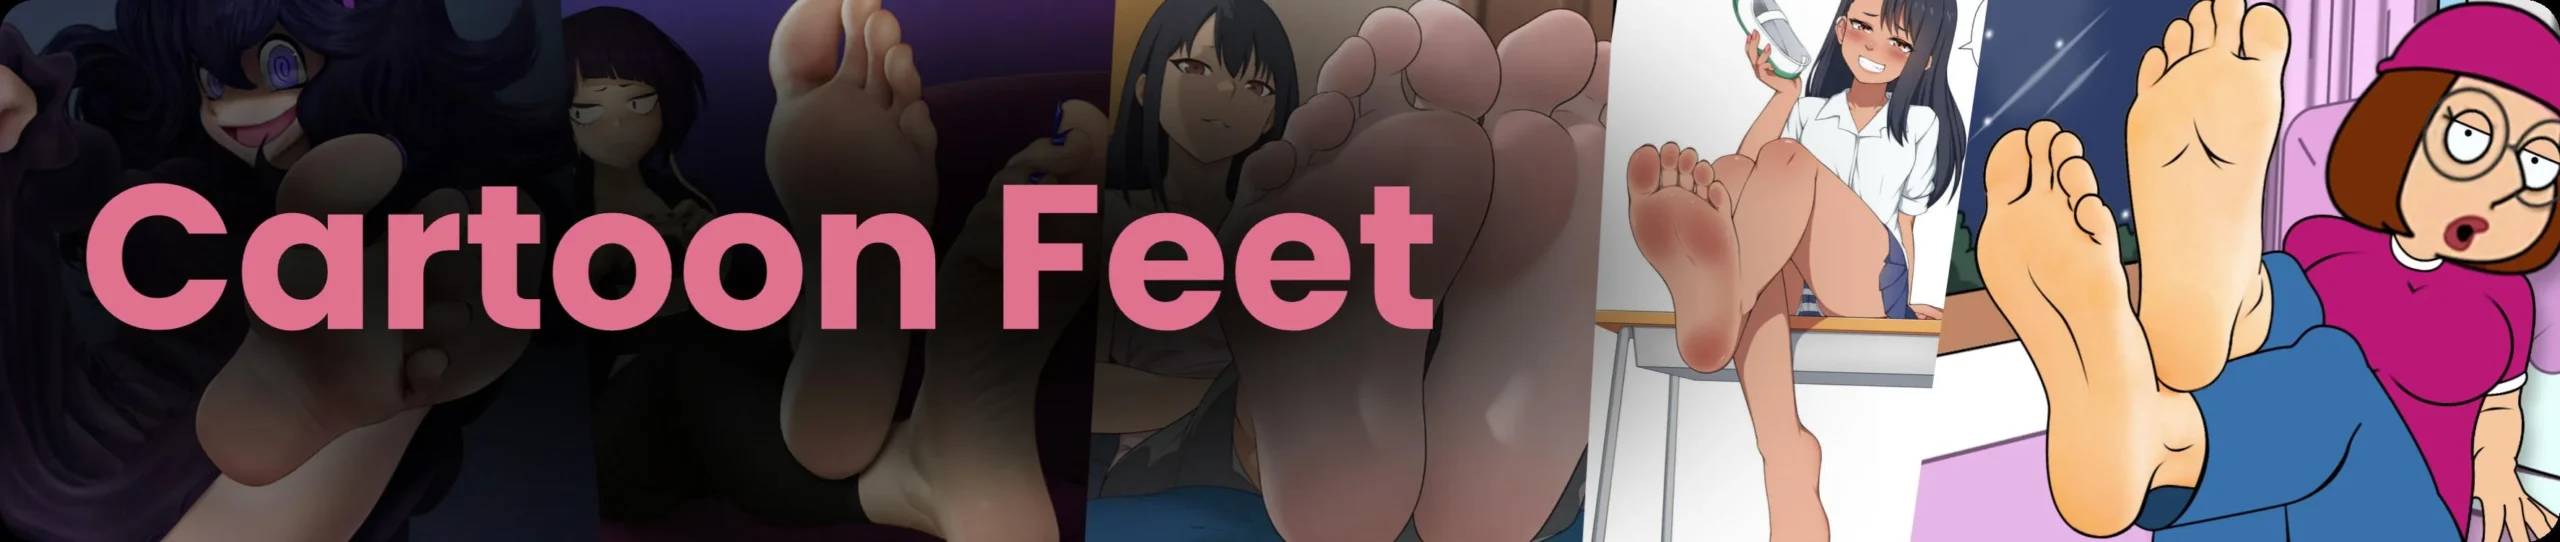 Cartoon Feet Category Banner